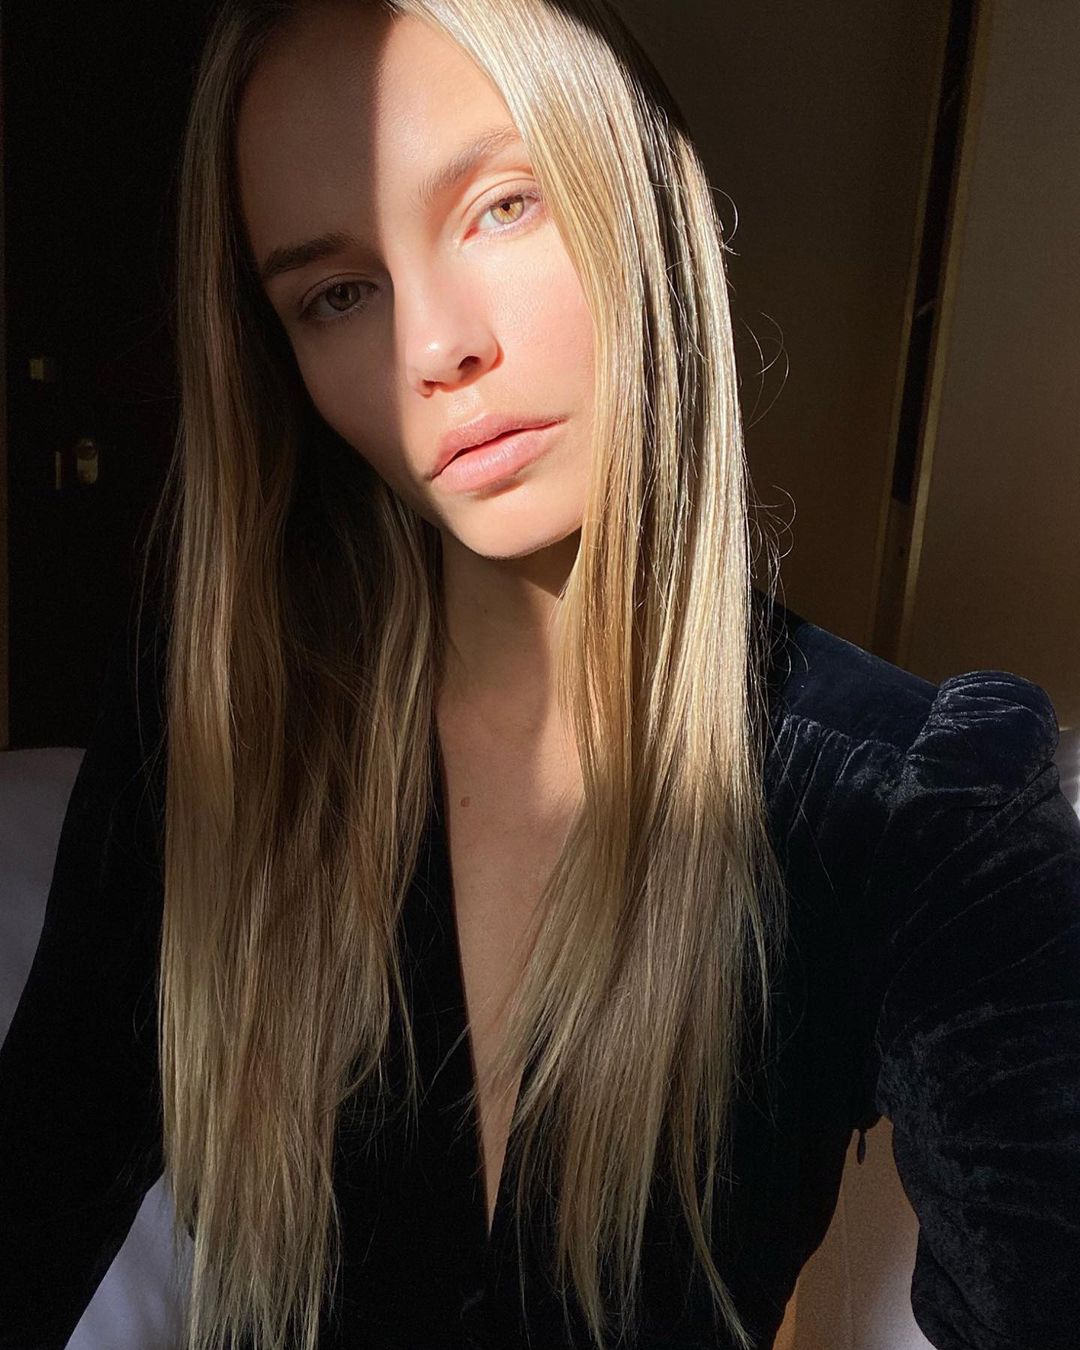 Leonie Hanne'den Georgia May Jagger'a Haftanın Güzellik Instagramları